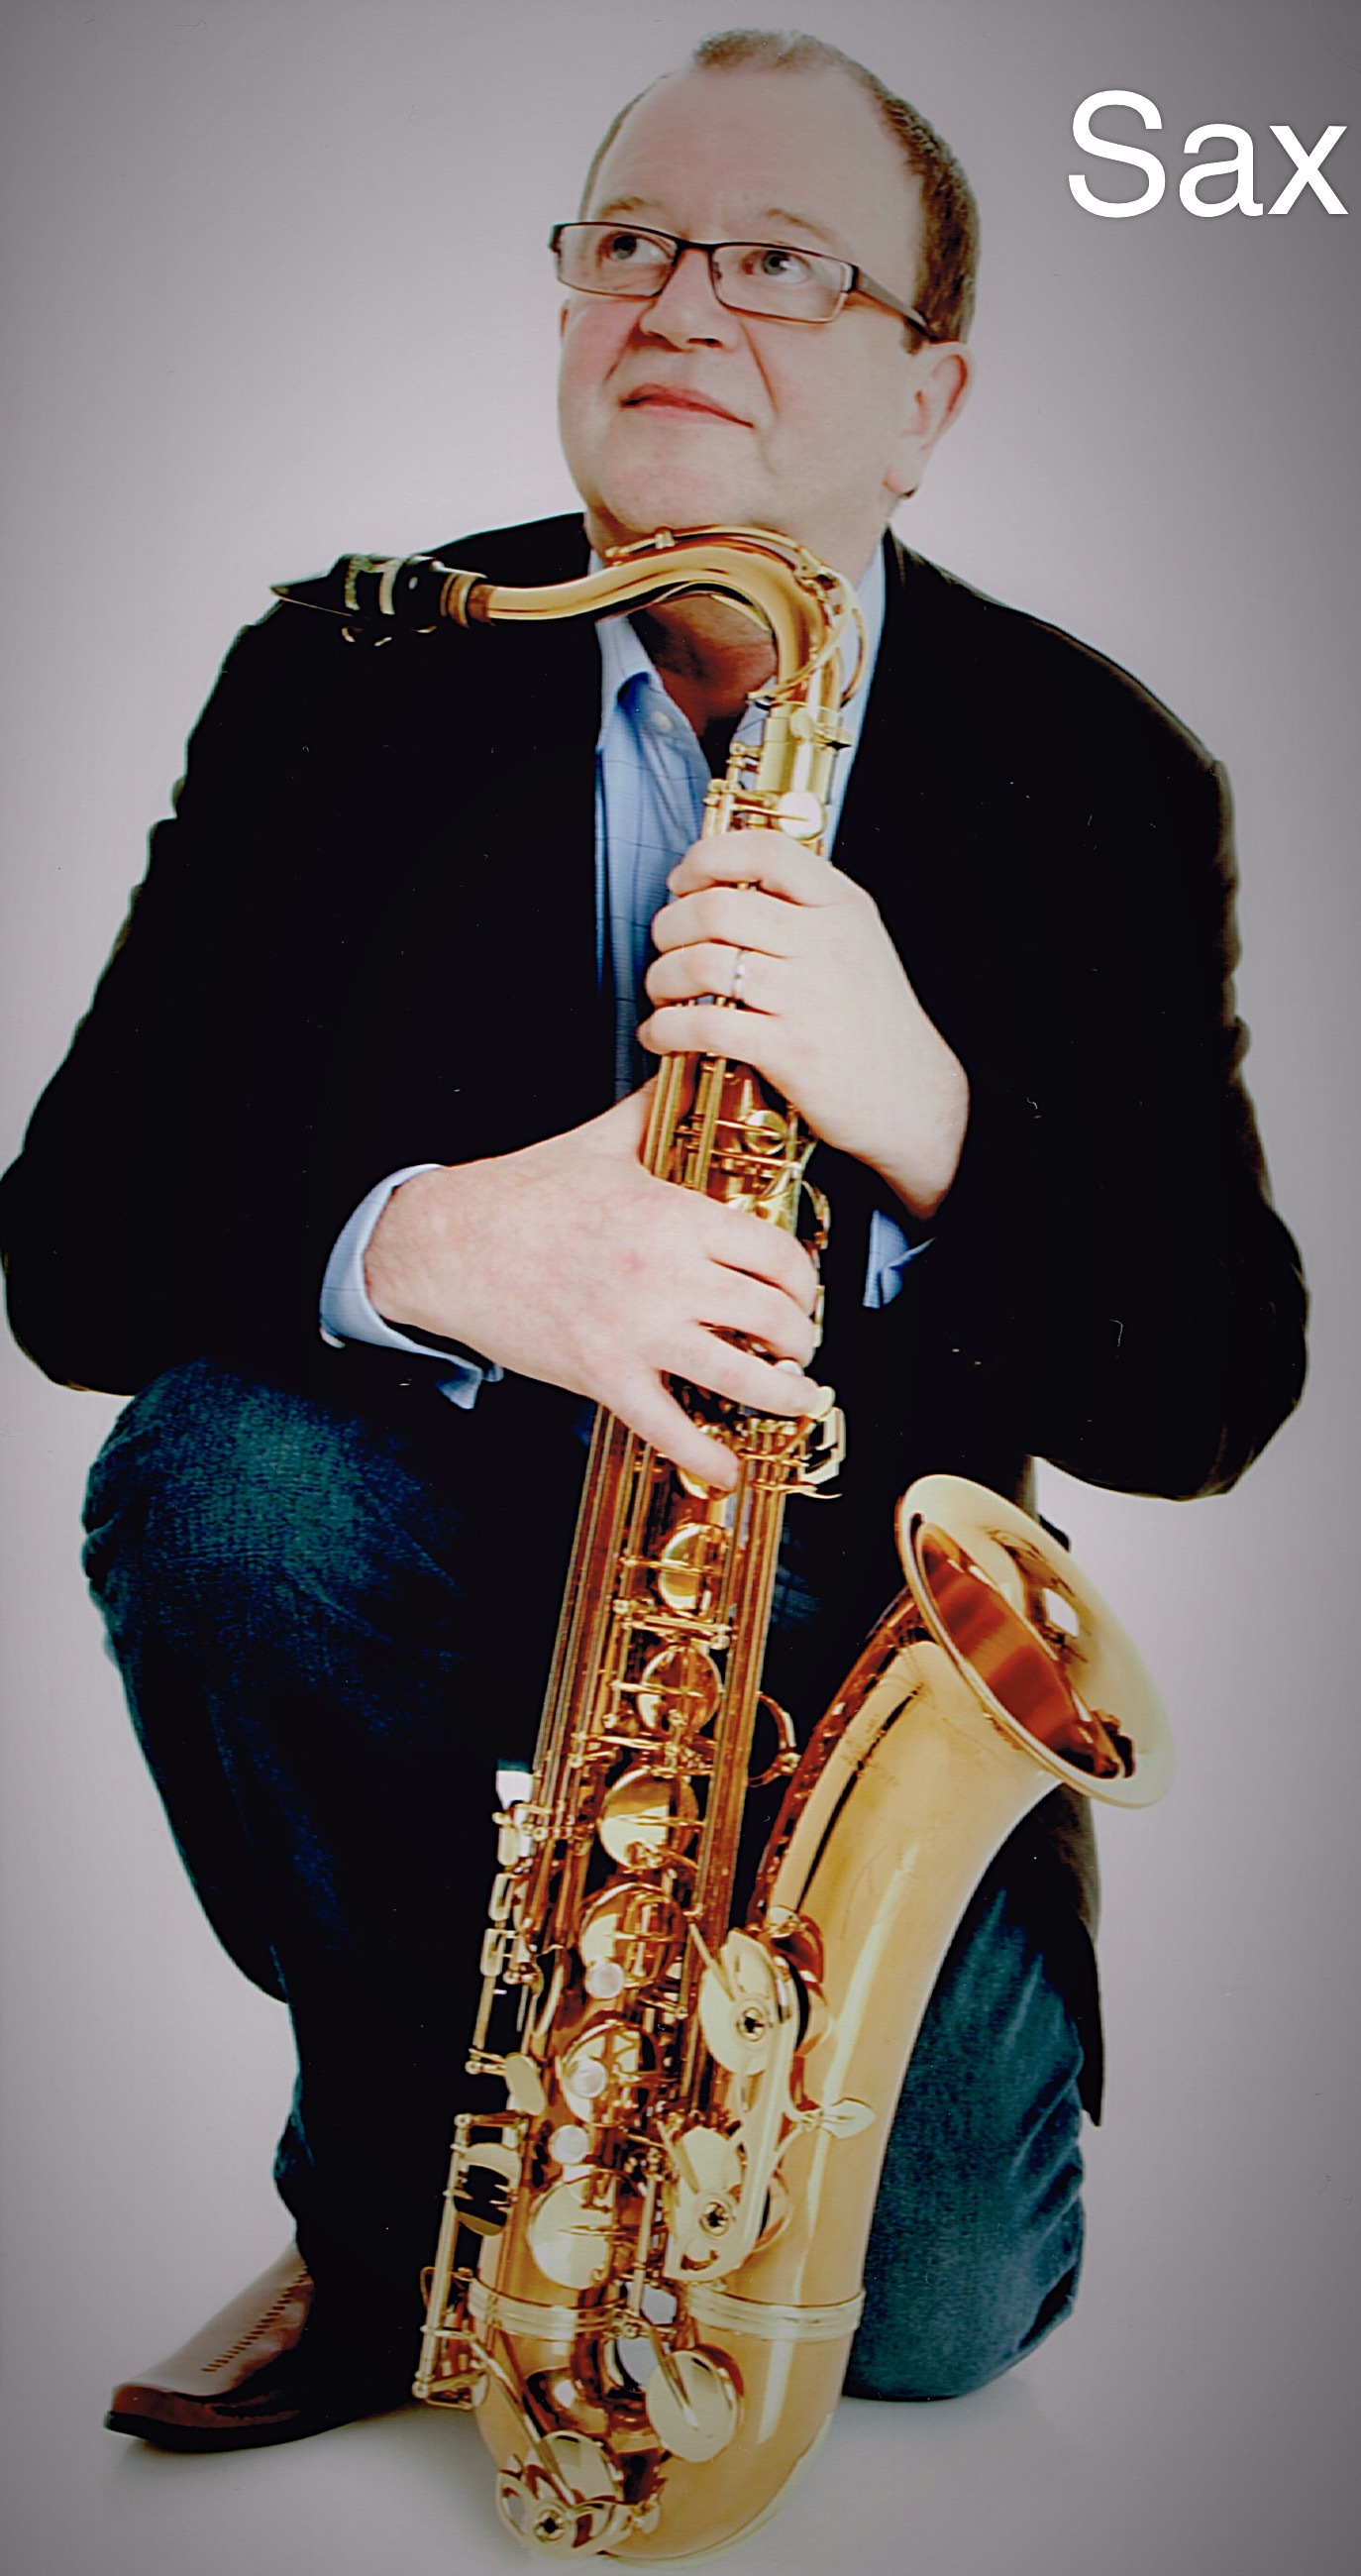 Saxophonist Ken in East Kilbride, Central Scotland